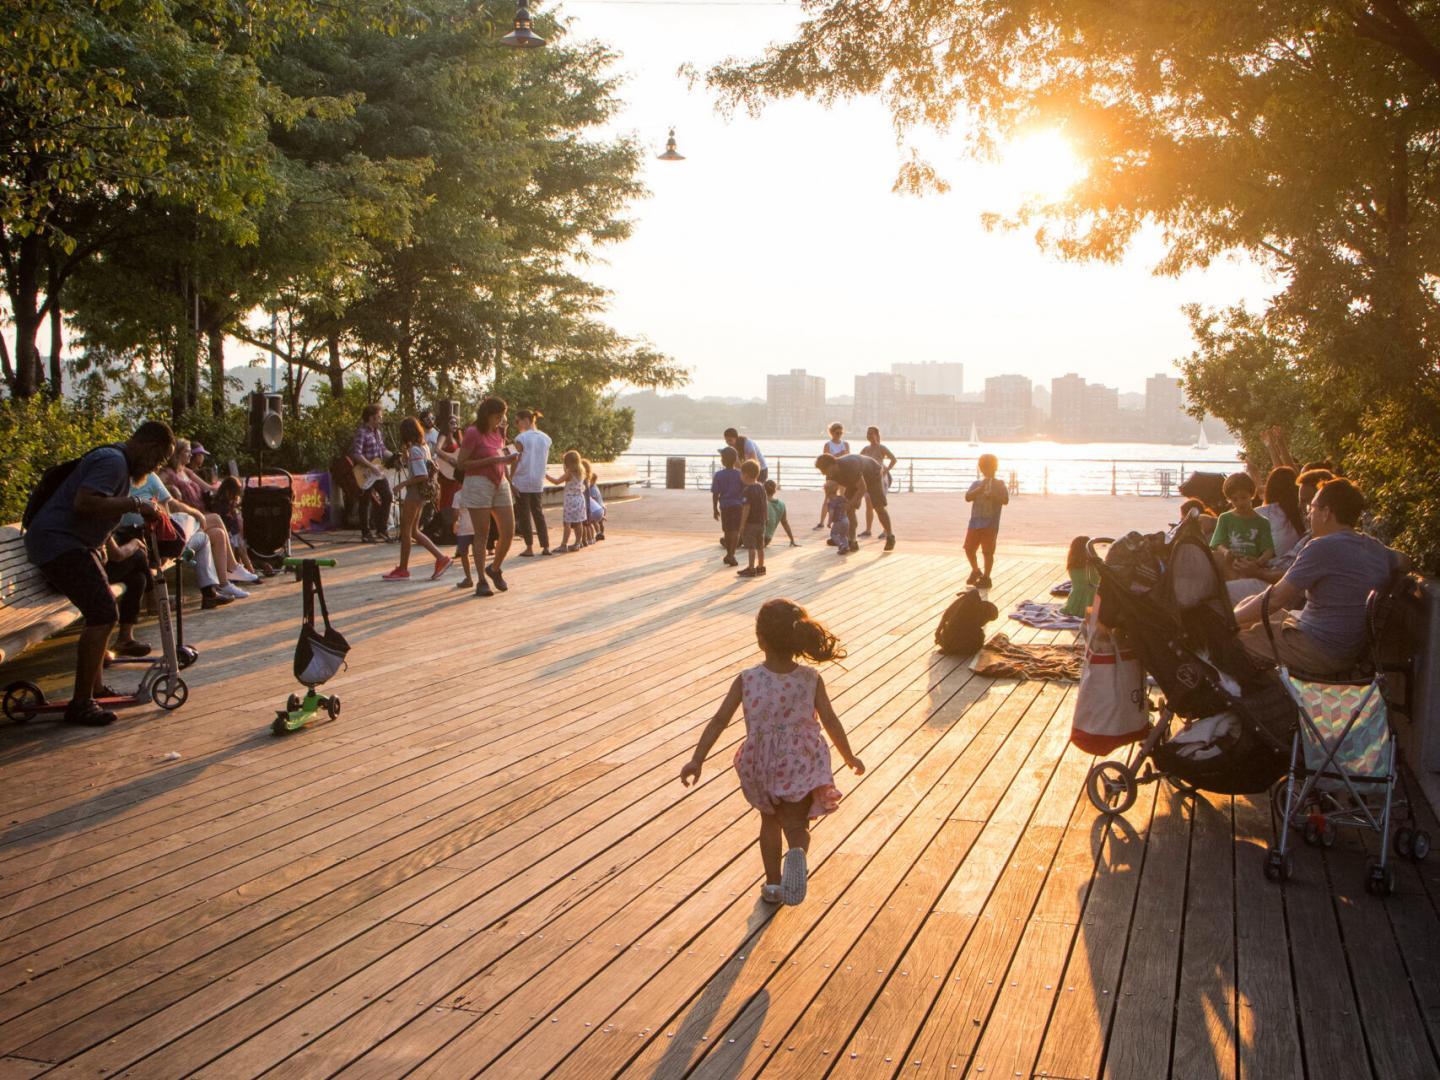 Park visitors enjoy the Pier as the sun sets